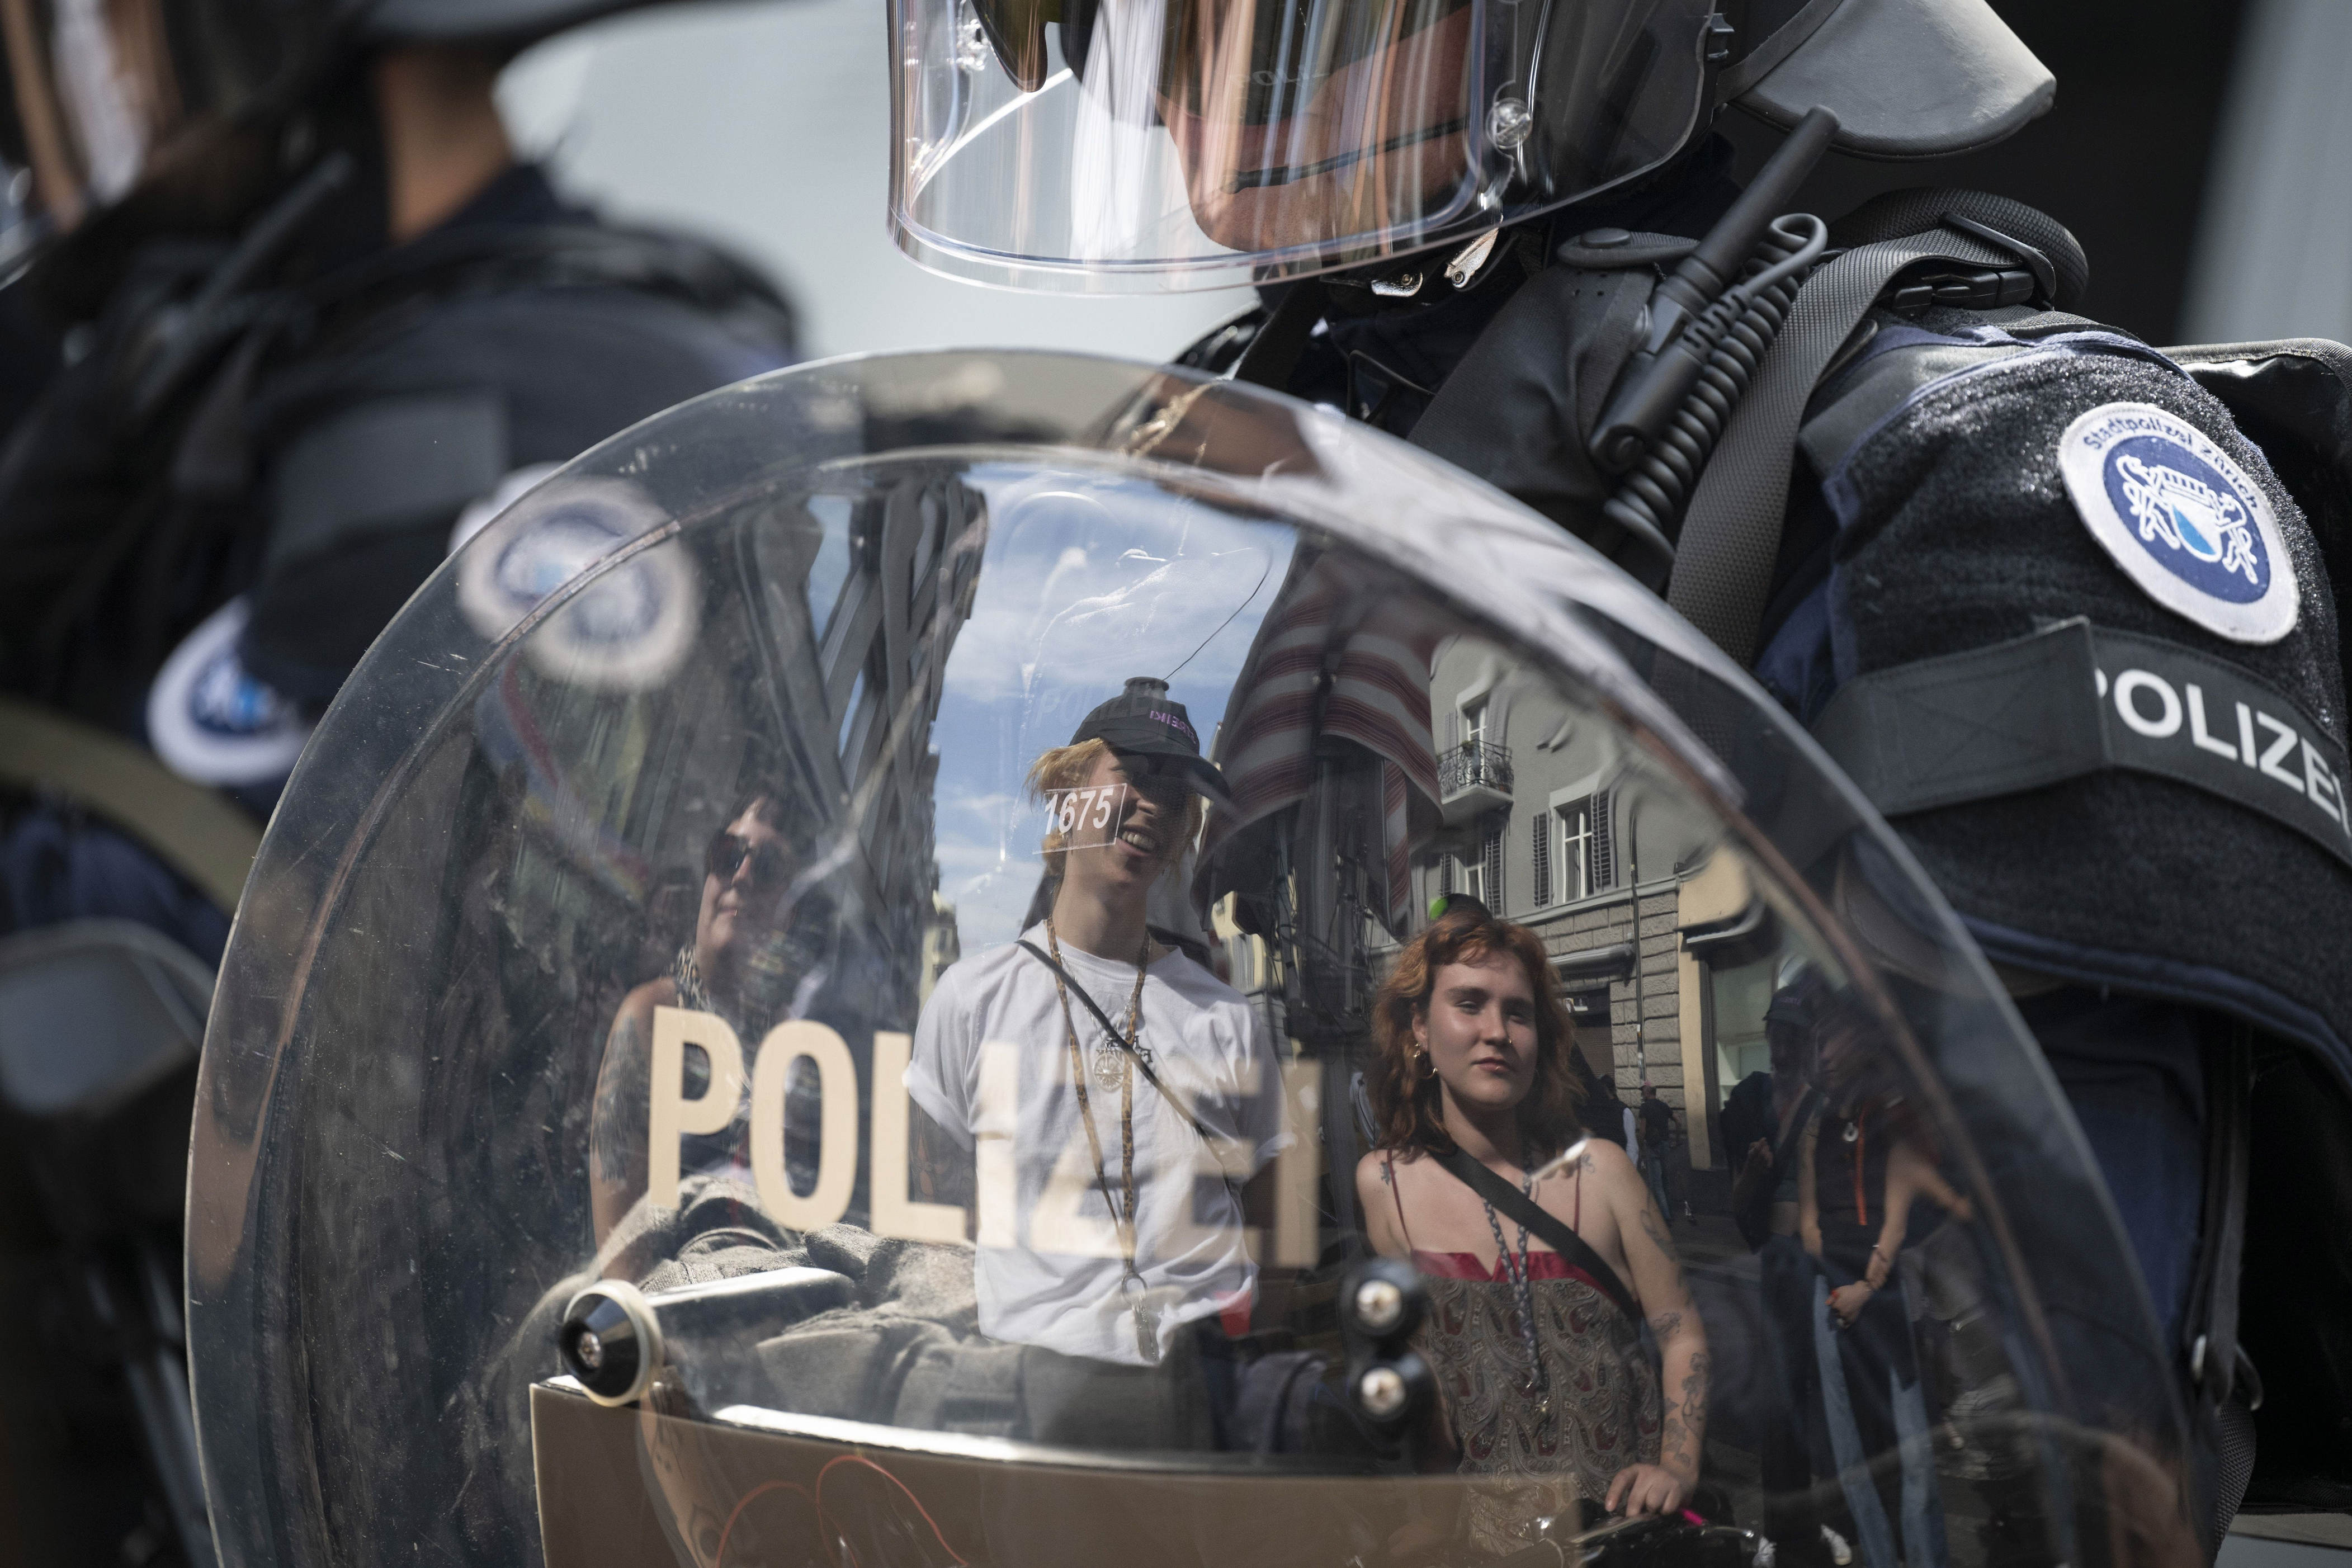 1 . mai in zürich: 11 000 teilnehmer am umzug, scharmützel mit der polizei und festnahmen an nachdemo – hausbesetzer dringen in mehrere gebäude ein